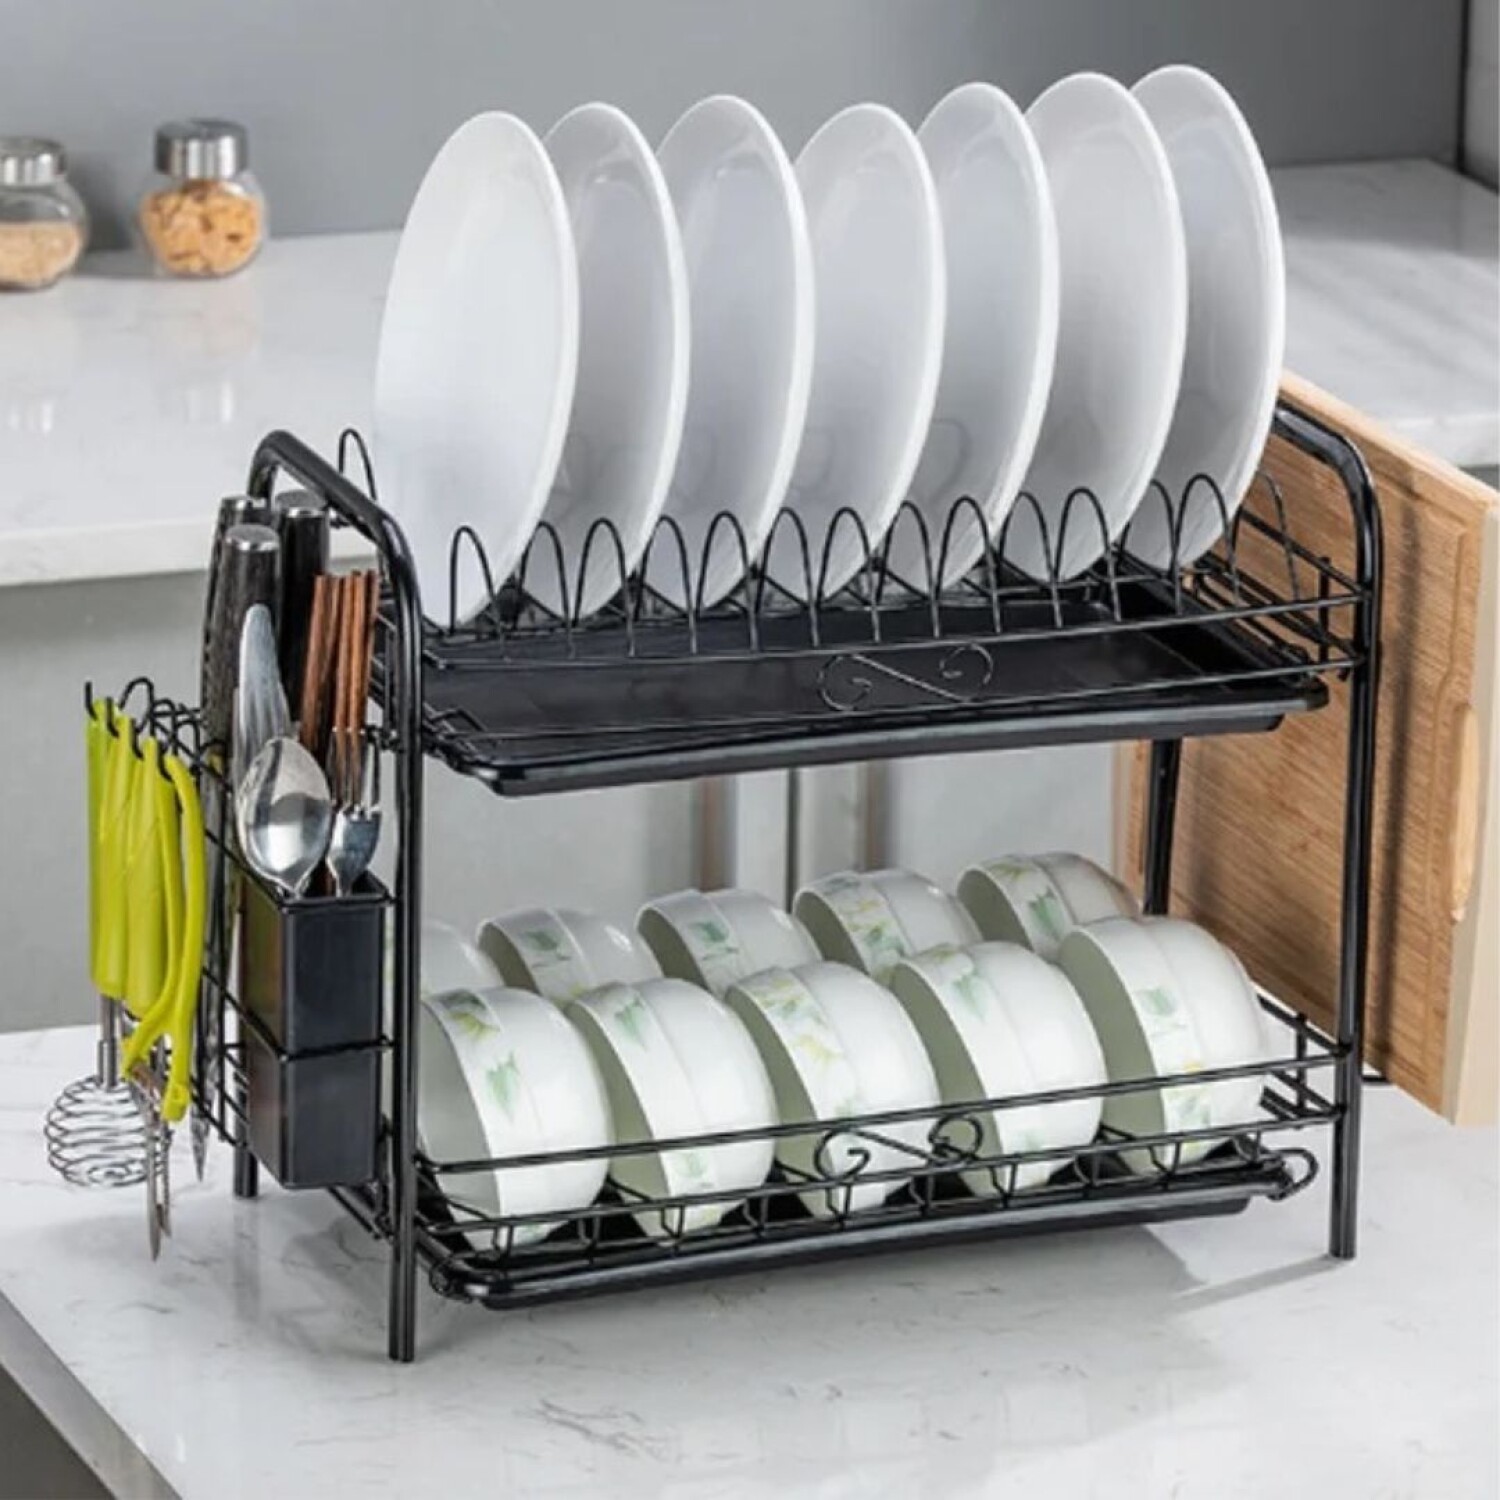 Secaplatos escurridor de platos con drenaje bandeja smart dish rack